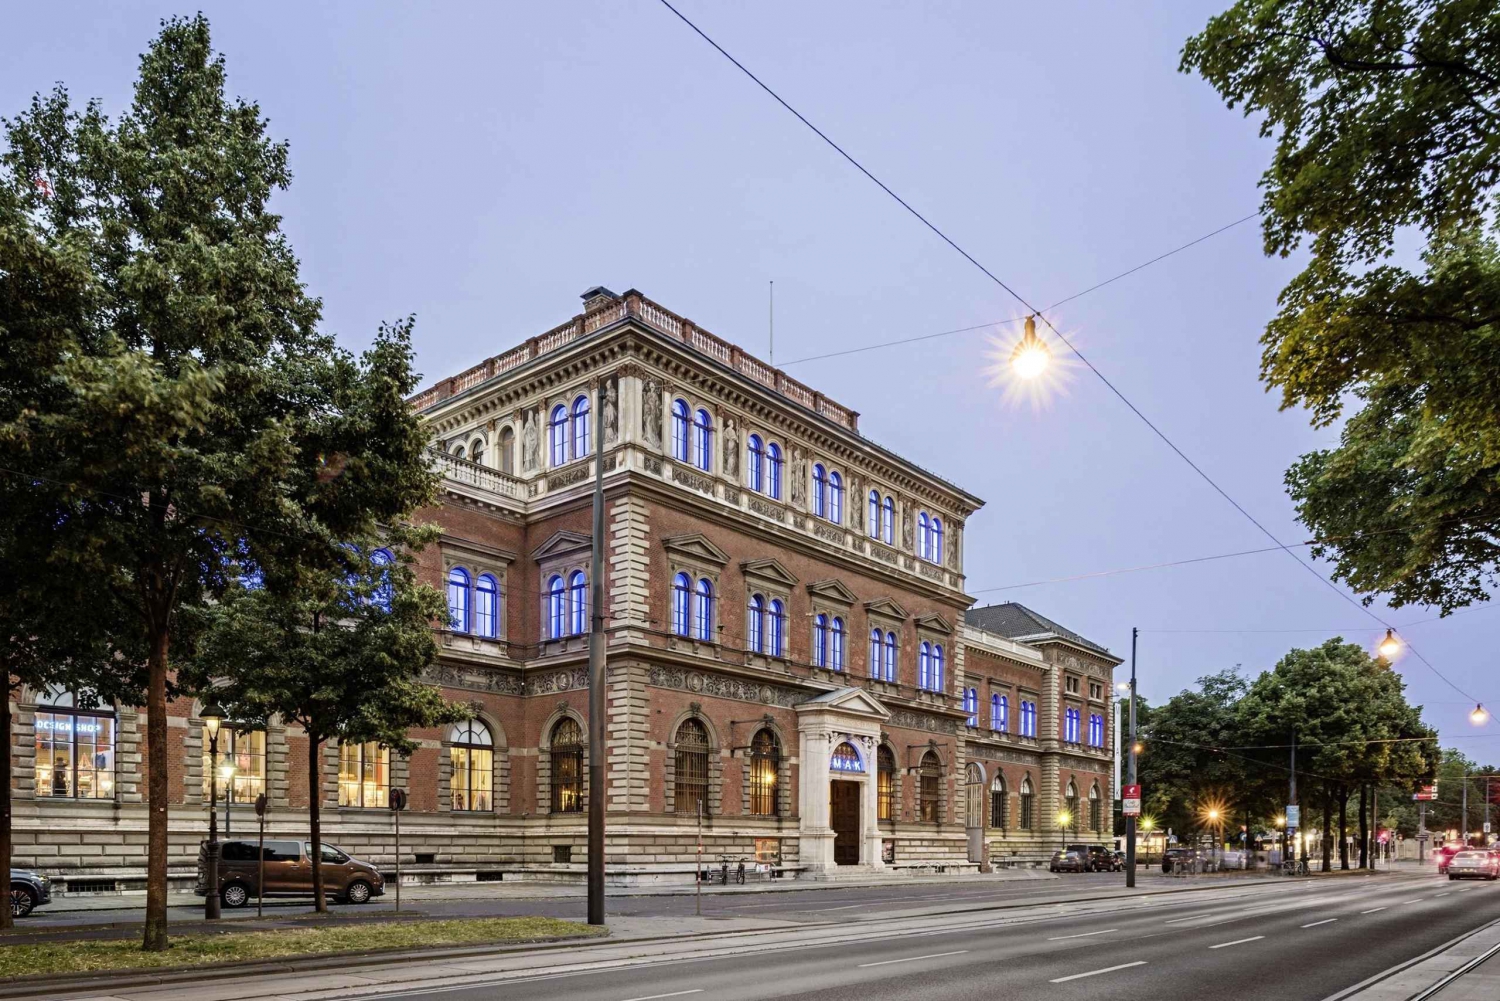 Wien: Eintrittskarte für das MAK - Museum für angewandte Kunst